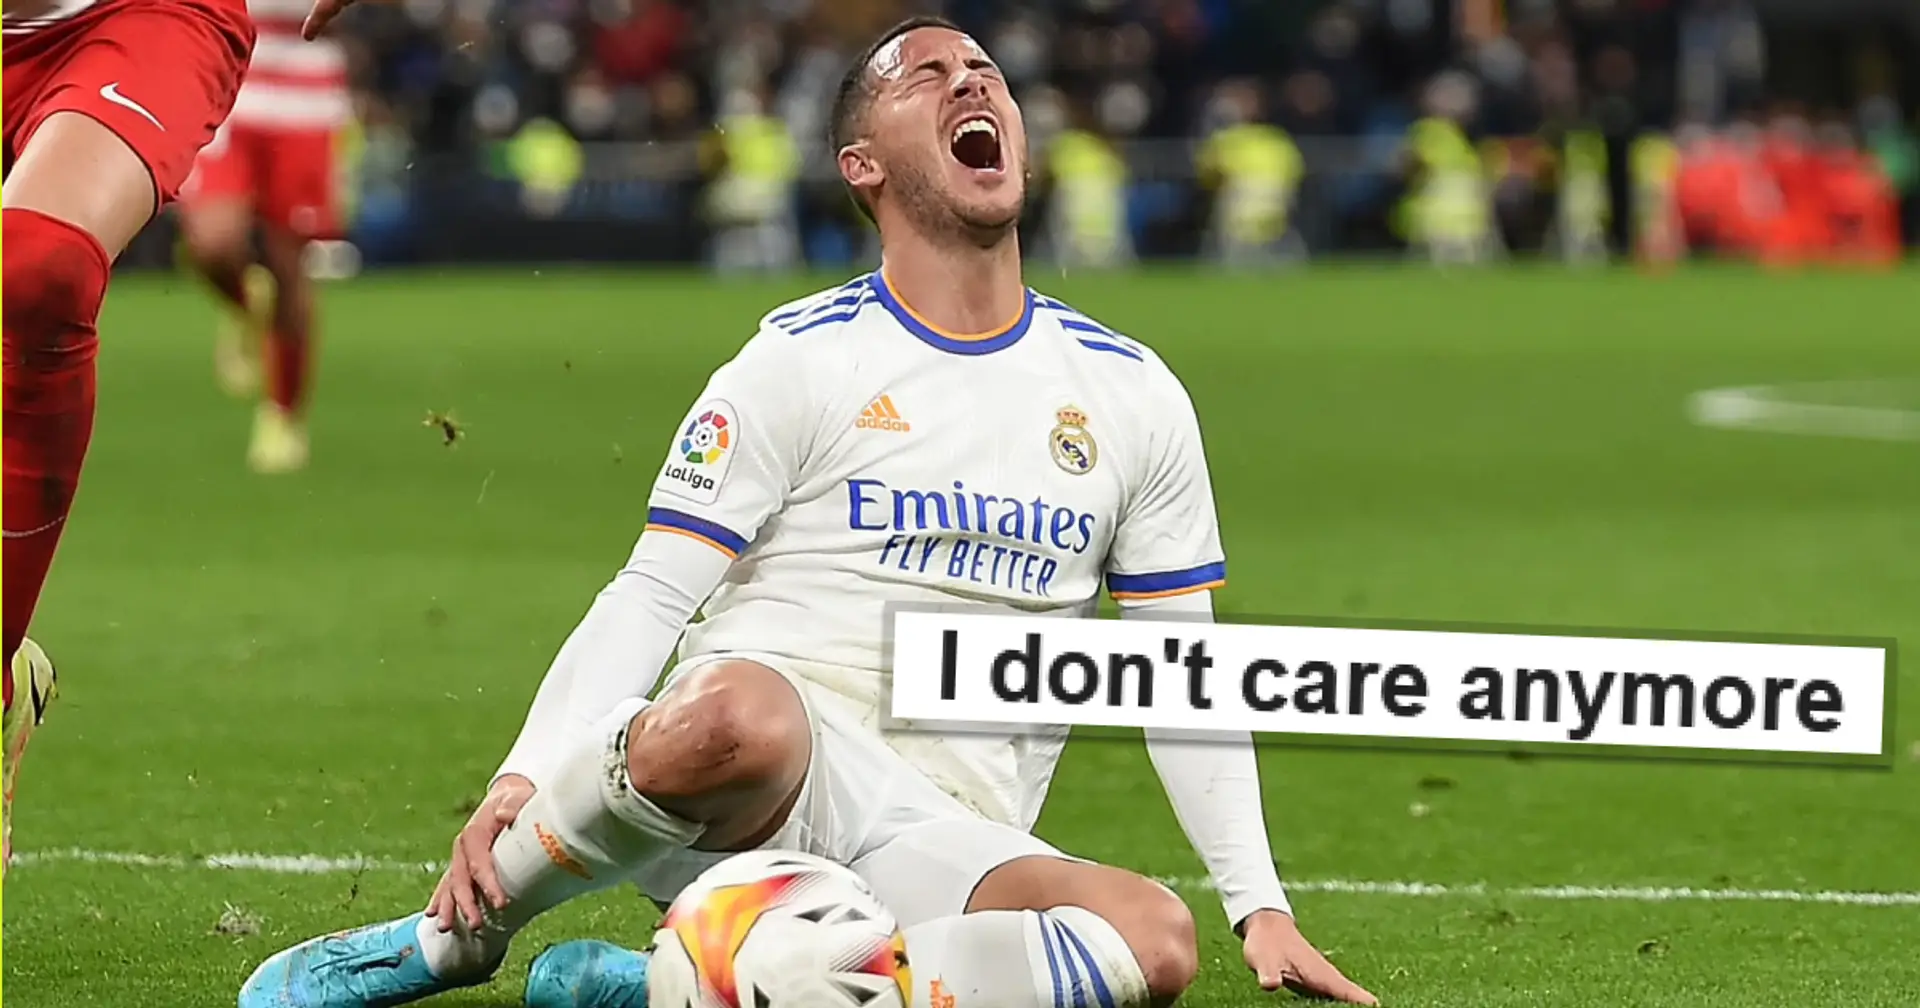 "S'il vous plaît, vendez ce gars": les fans de Madrid expriment leur dégoût alors que Hazard aurait subi une autre blessure